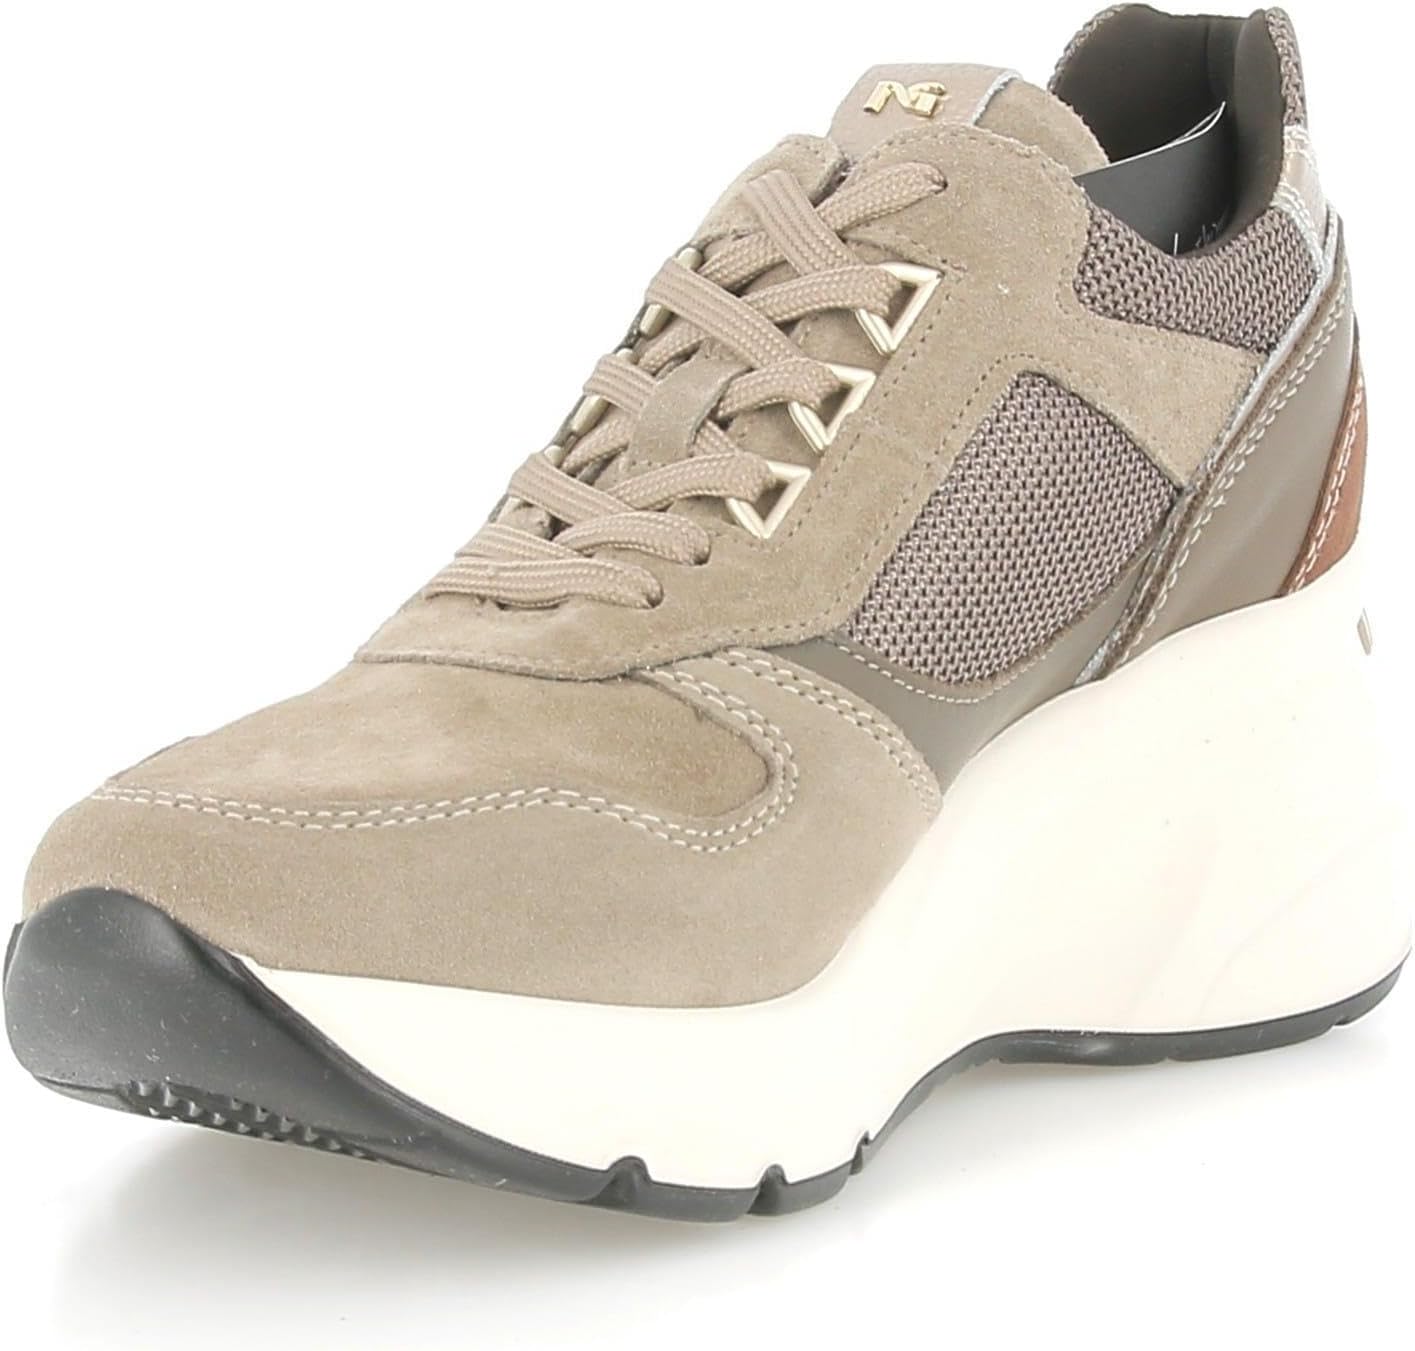 NERO GIARDINI Sneakers F.gomma Donna - Grigio modello I308312D